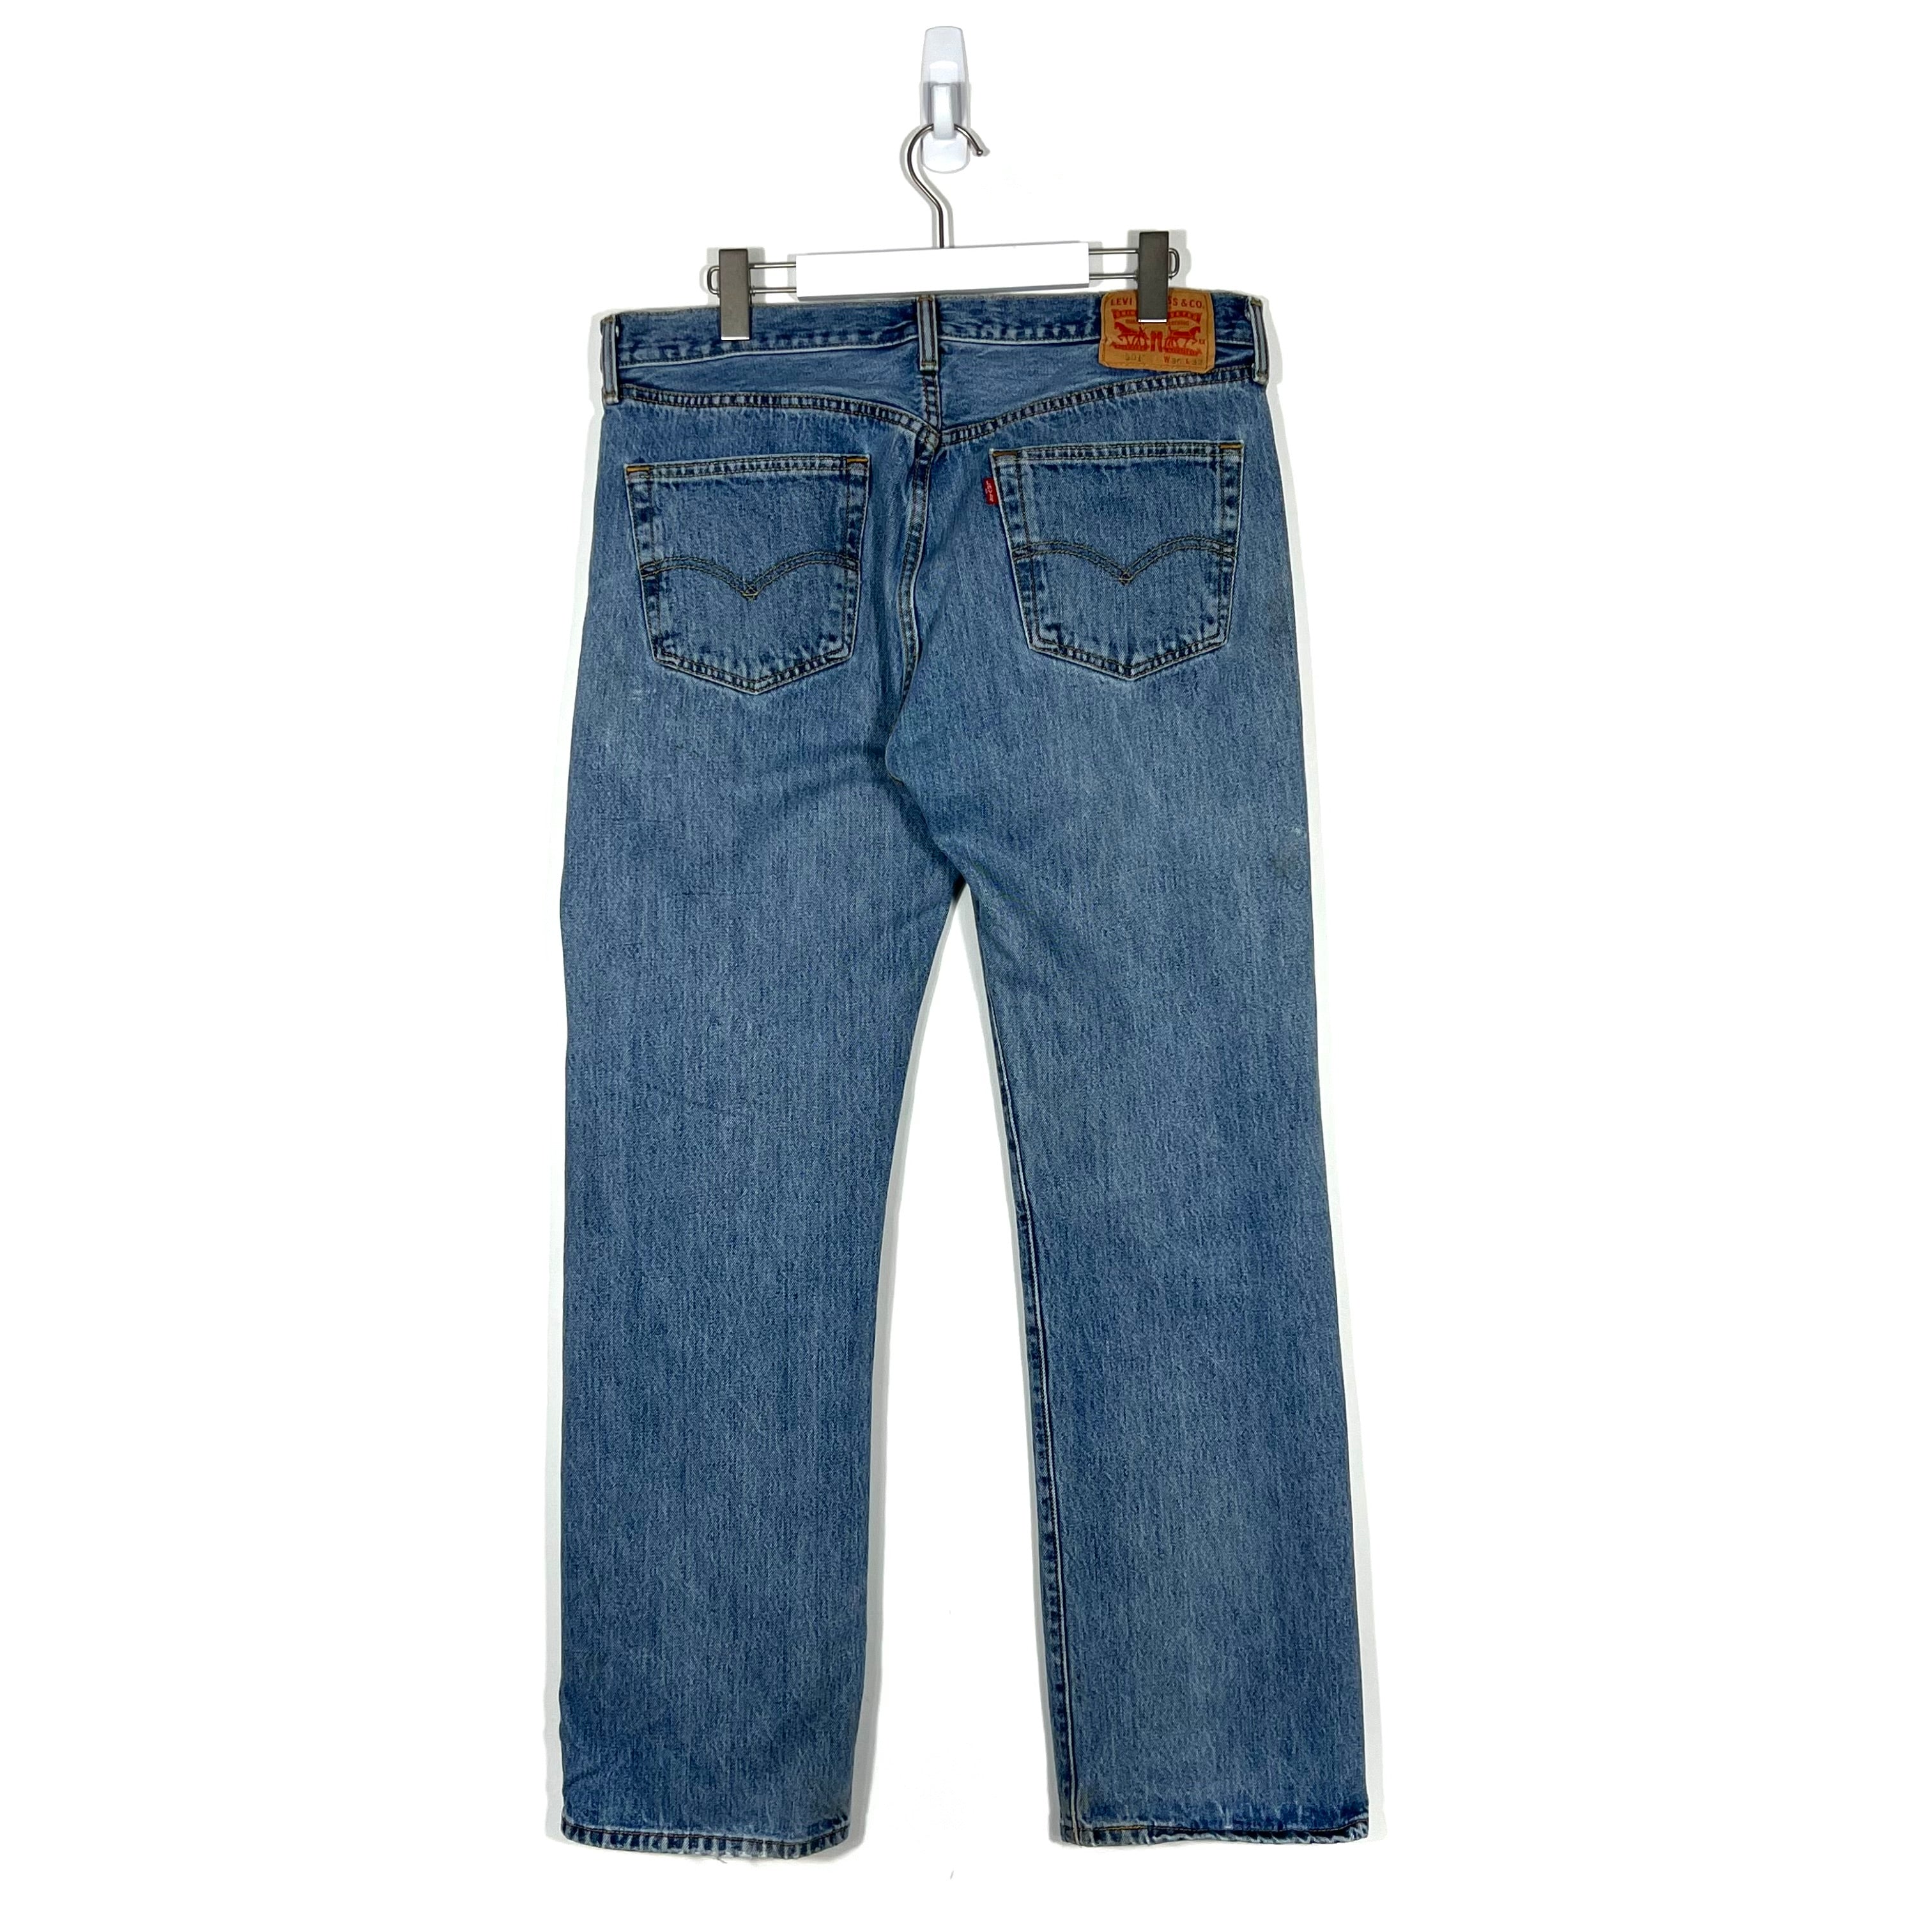 Vintage Levis 501 Jeans - Men's 36/32